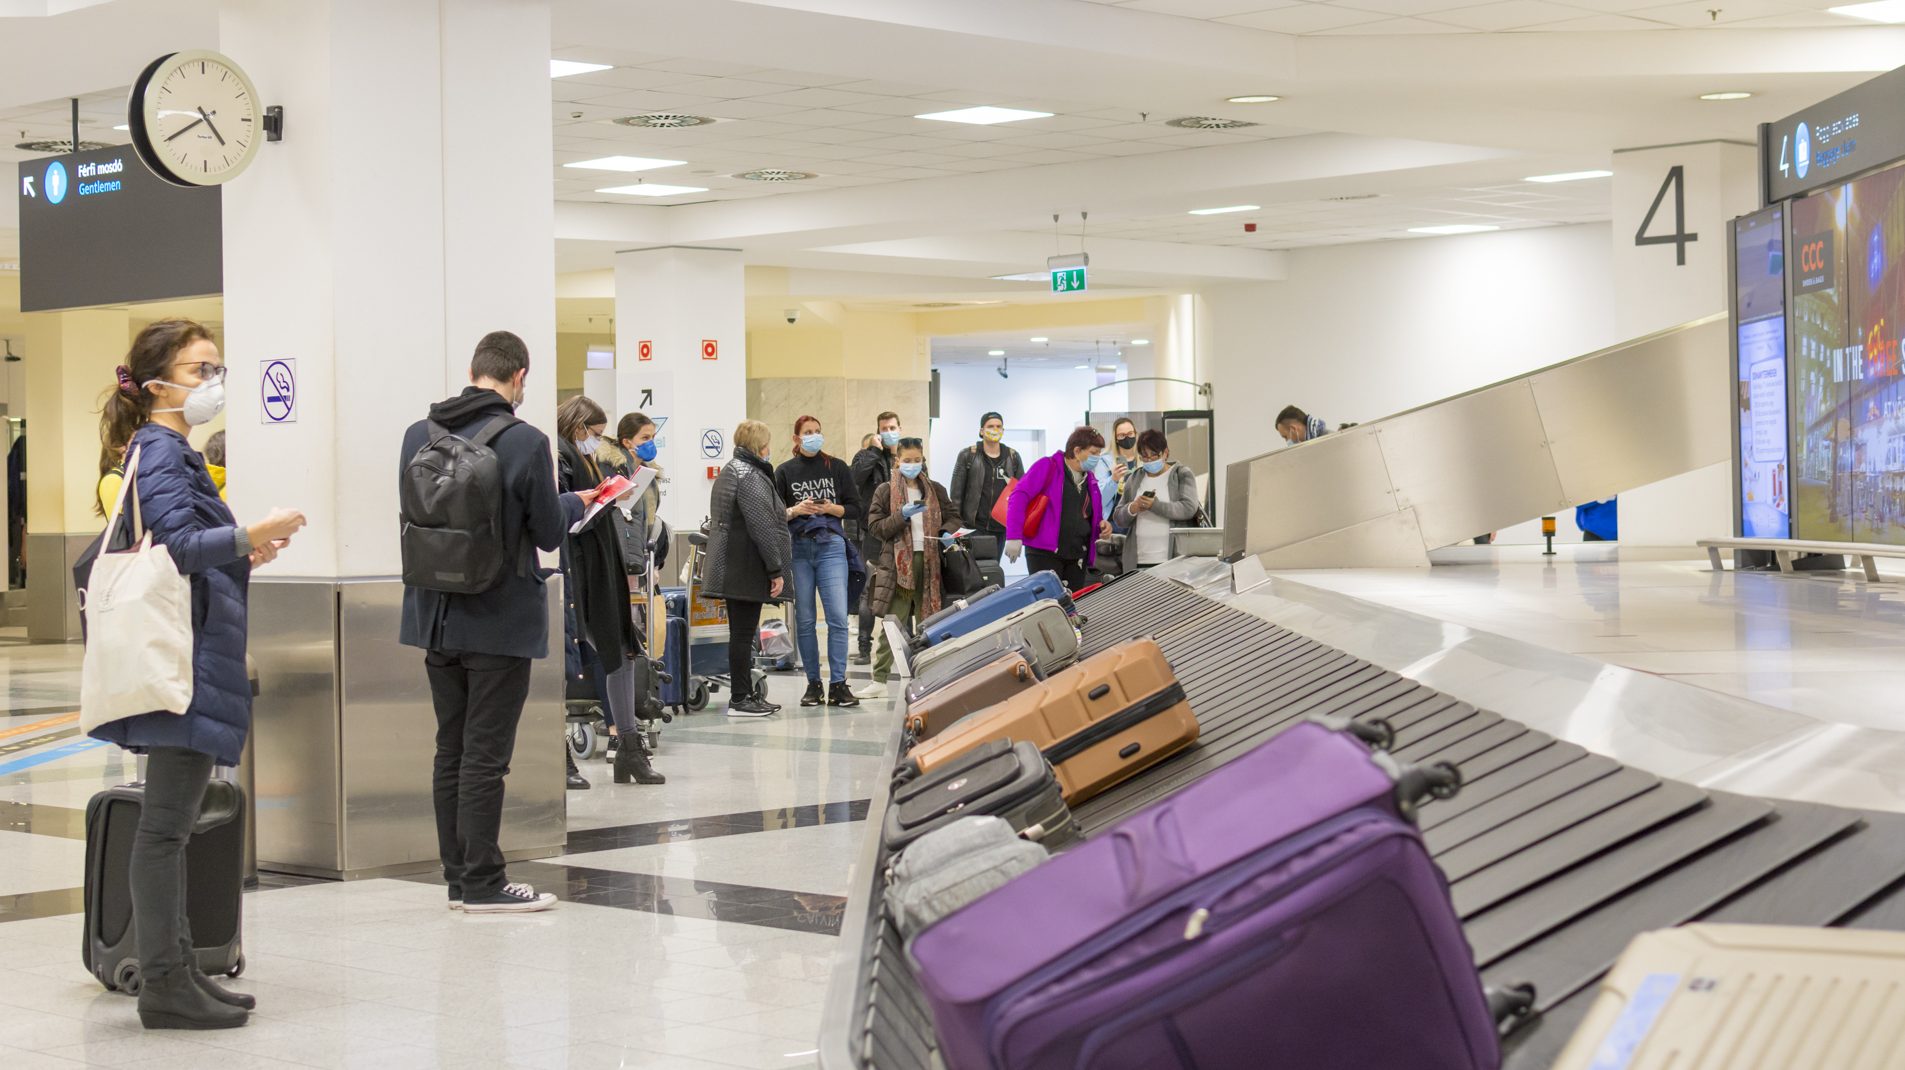 Ezernél is több szivart foglaltak le egy kubai férfitől a budapesti reptéren